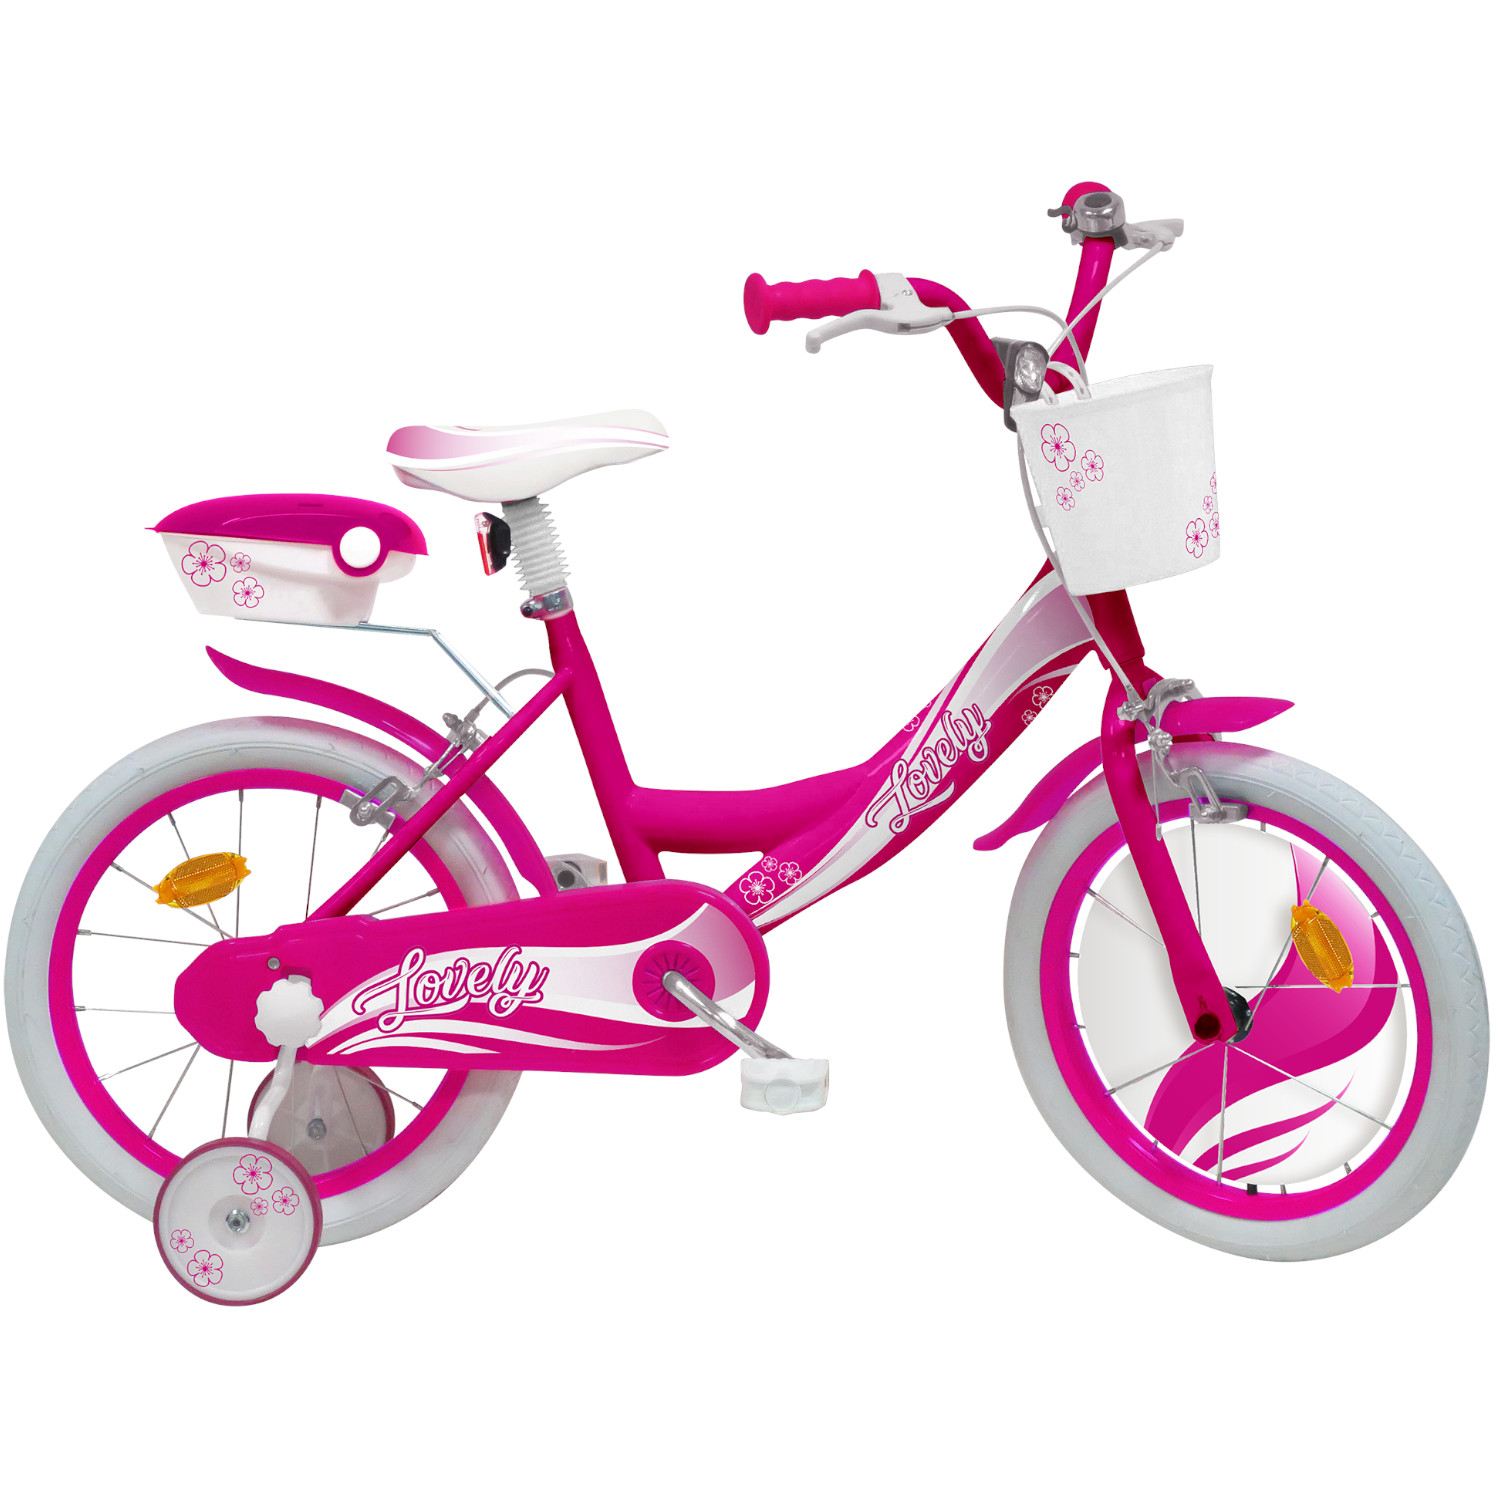 Bicicletta 16" - fucsia - 2 freni caliper - bauletto, cestello e disco colorato nella ruota anteriore inclusi - adatta per  bambini dai 8-12 anni - SUN&SPORT